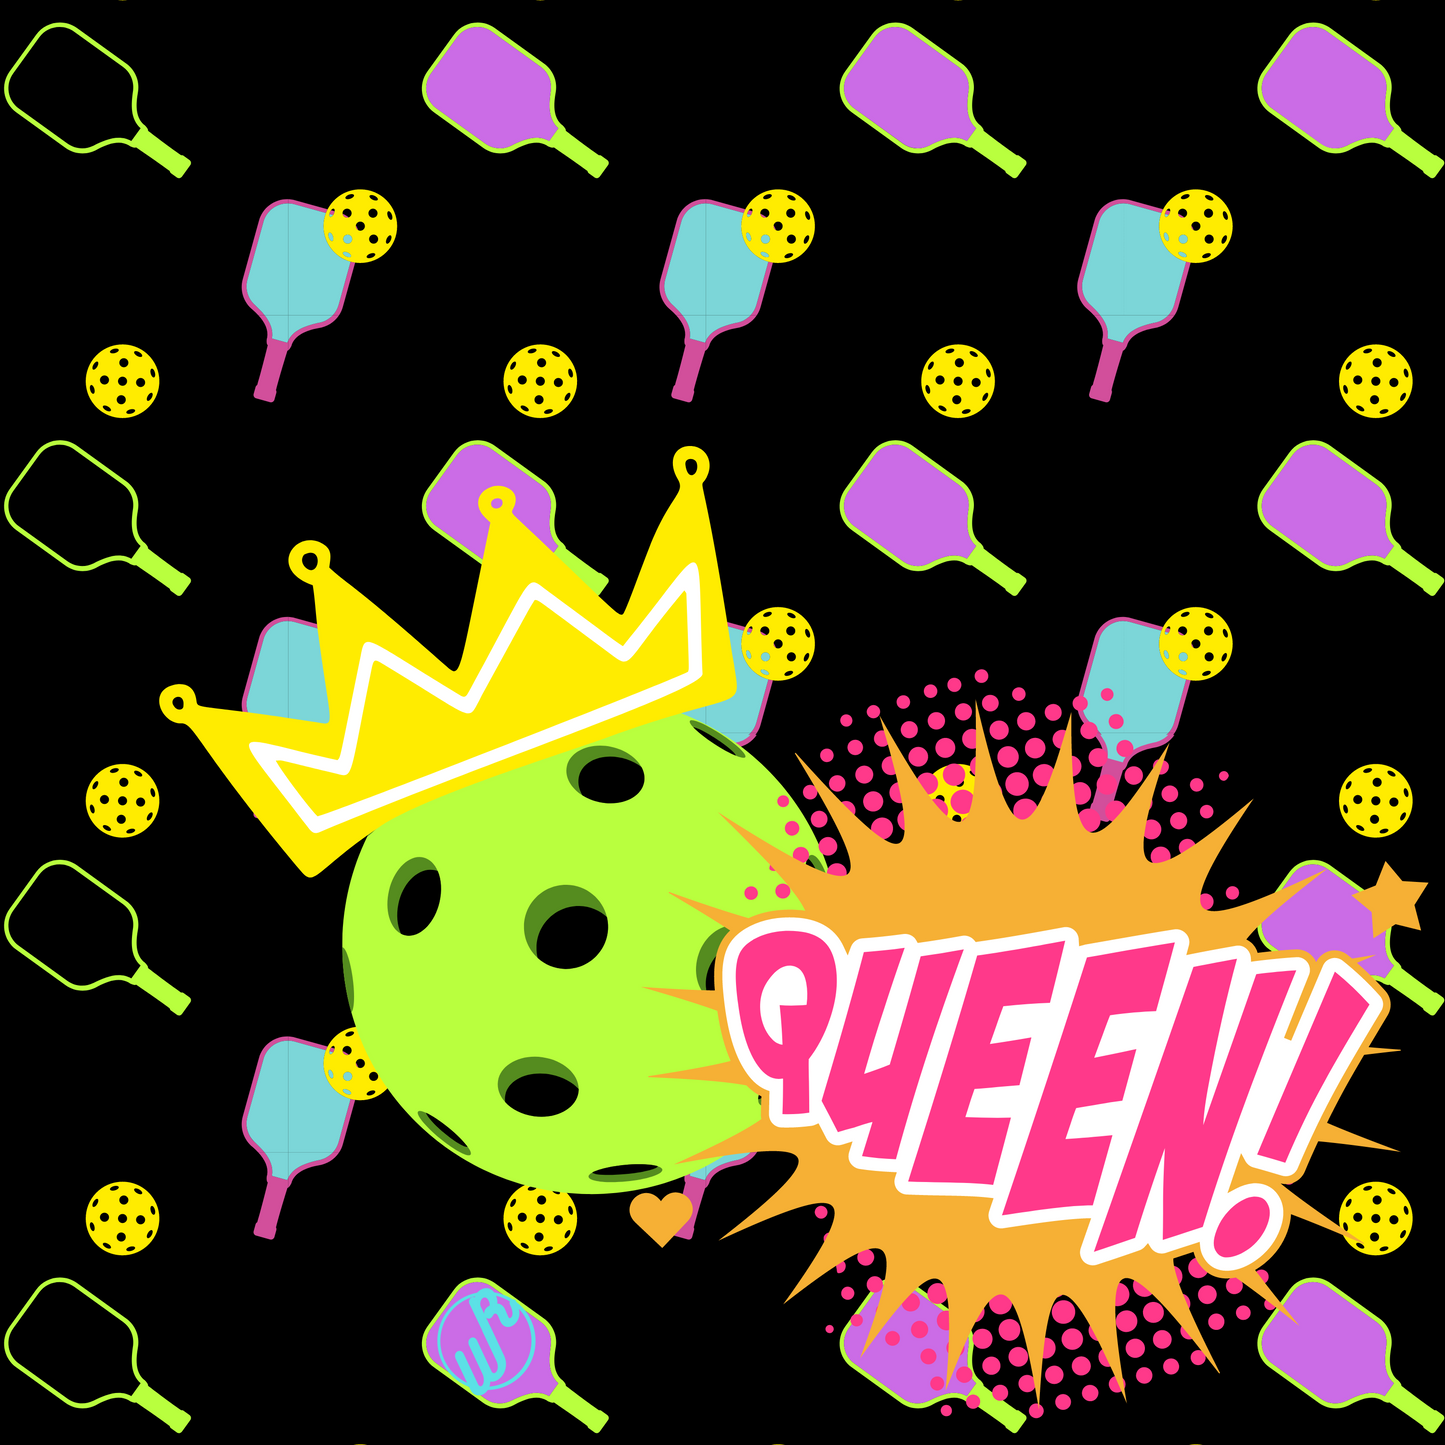 Pickle-ball Queen